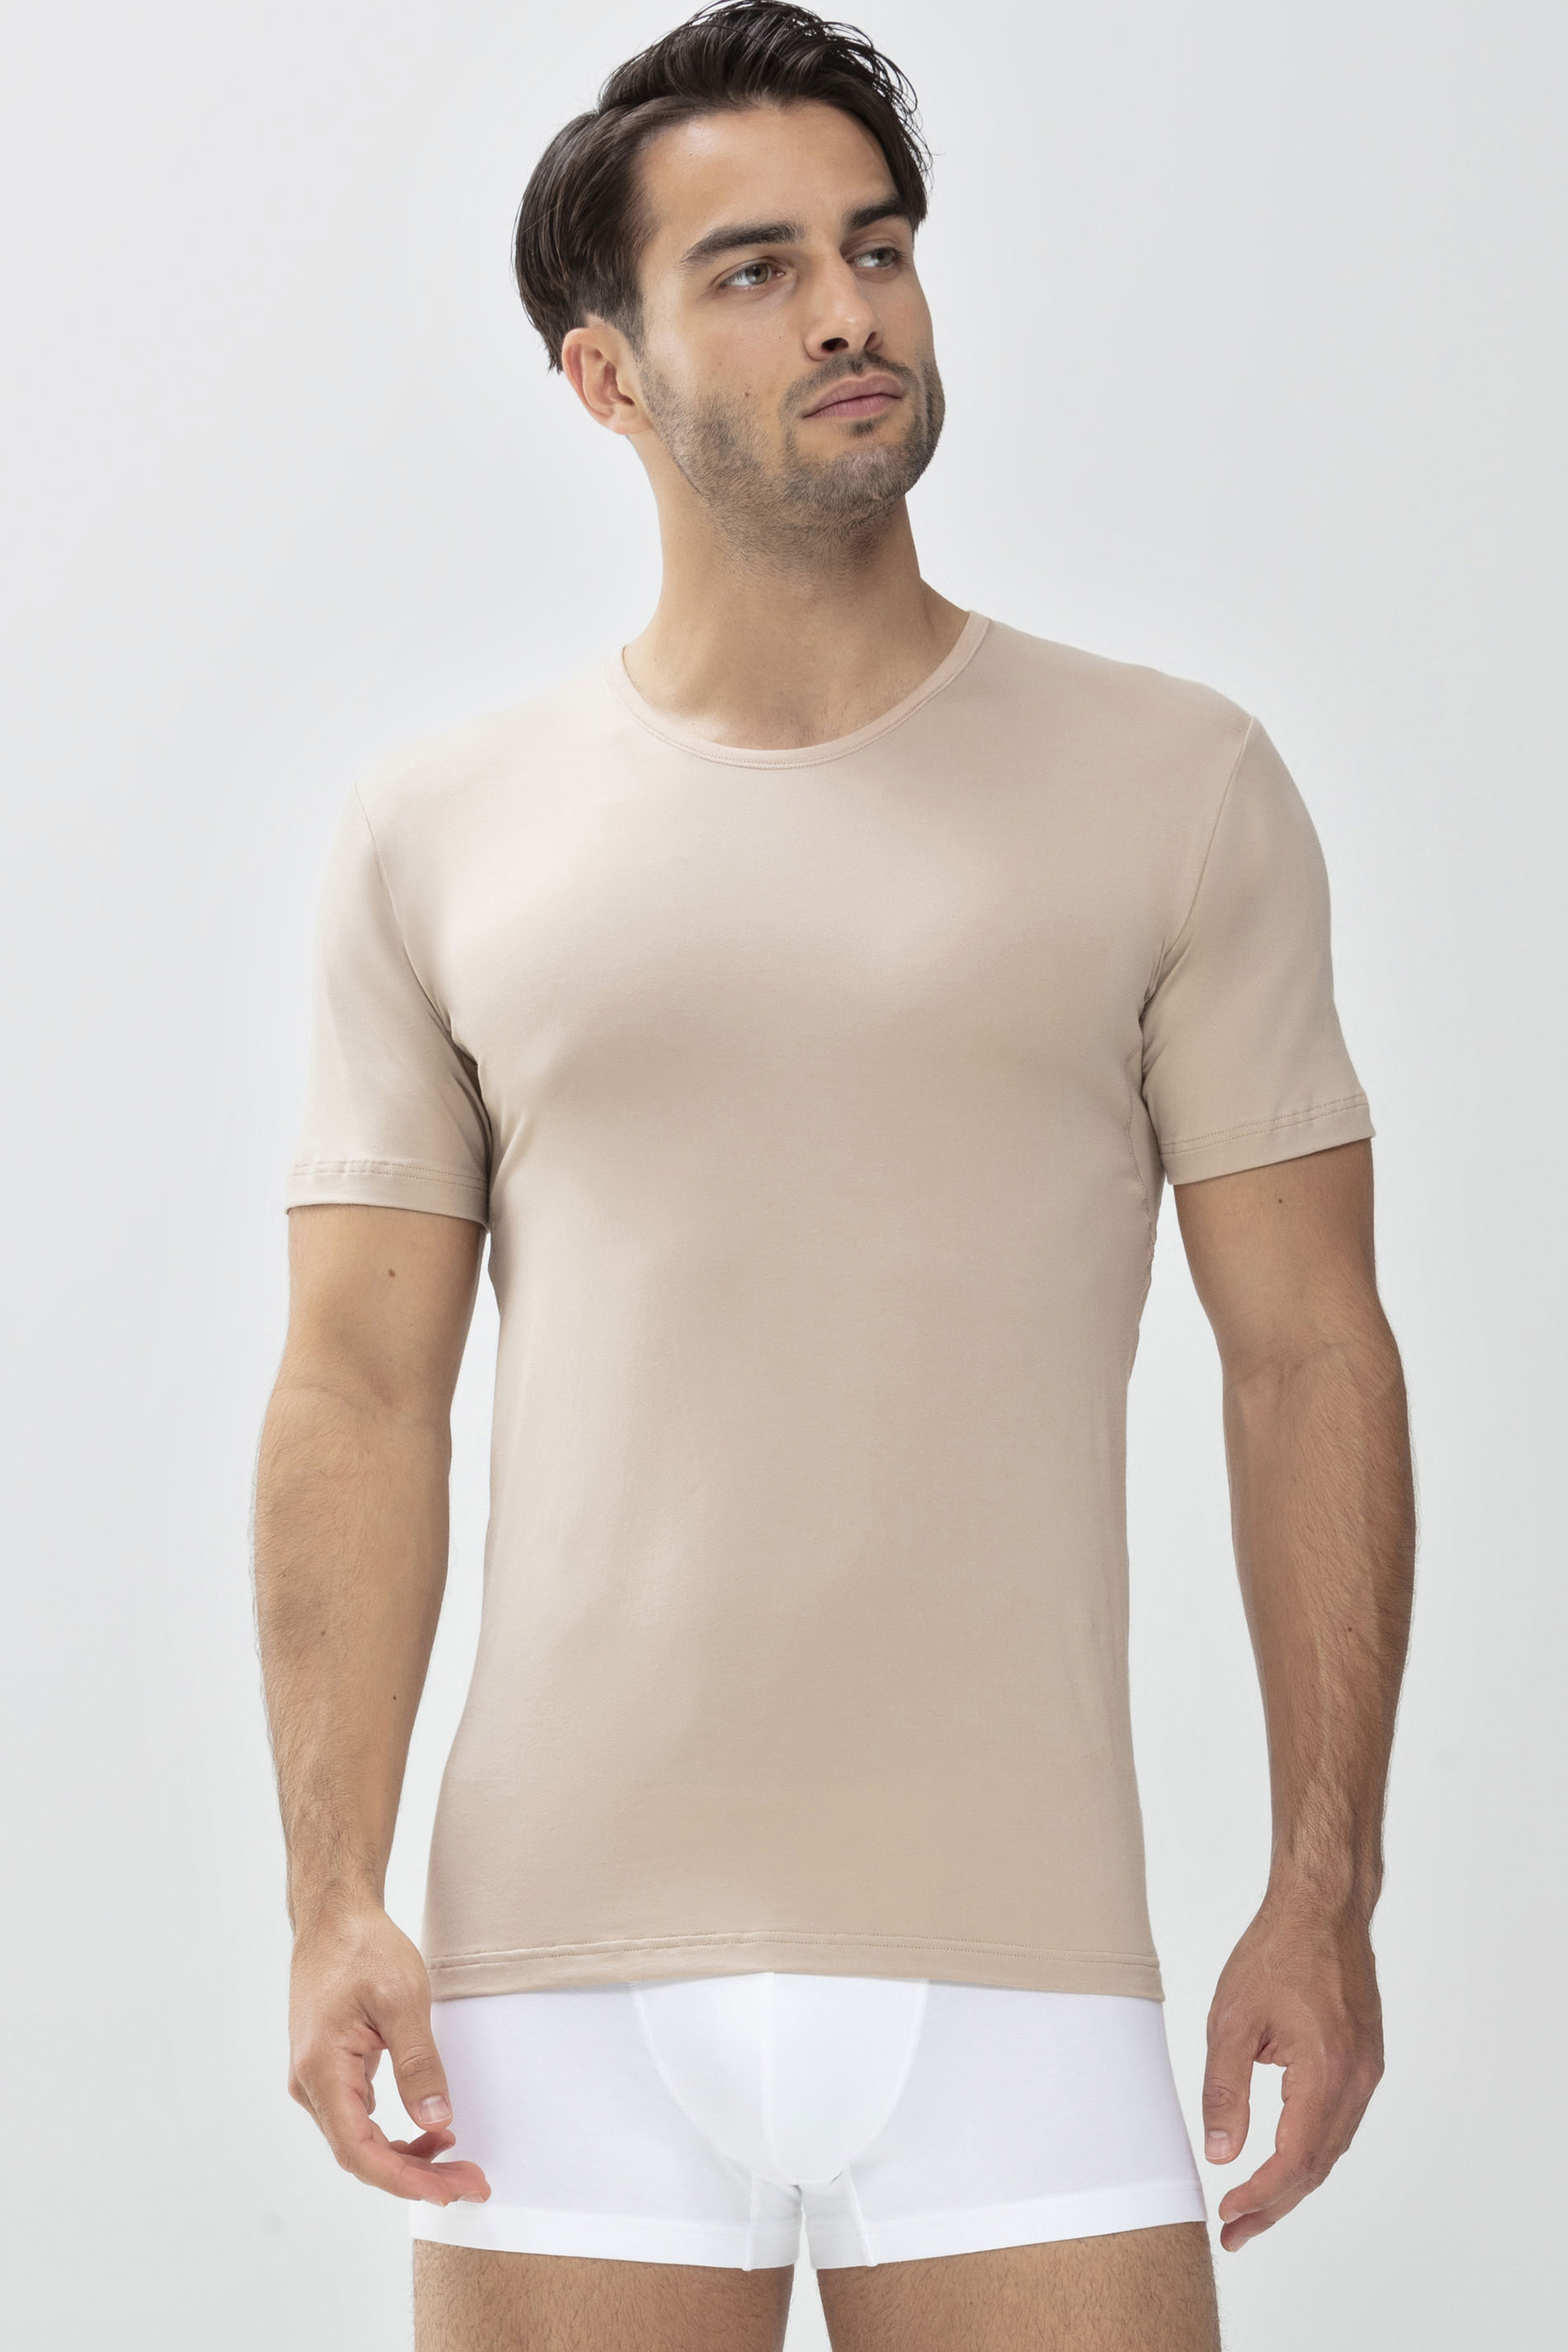 Das Drunterhemd - Crew-Neck Light Skin Serie Dry Cotton Functional  Frontansicht | mey®